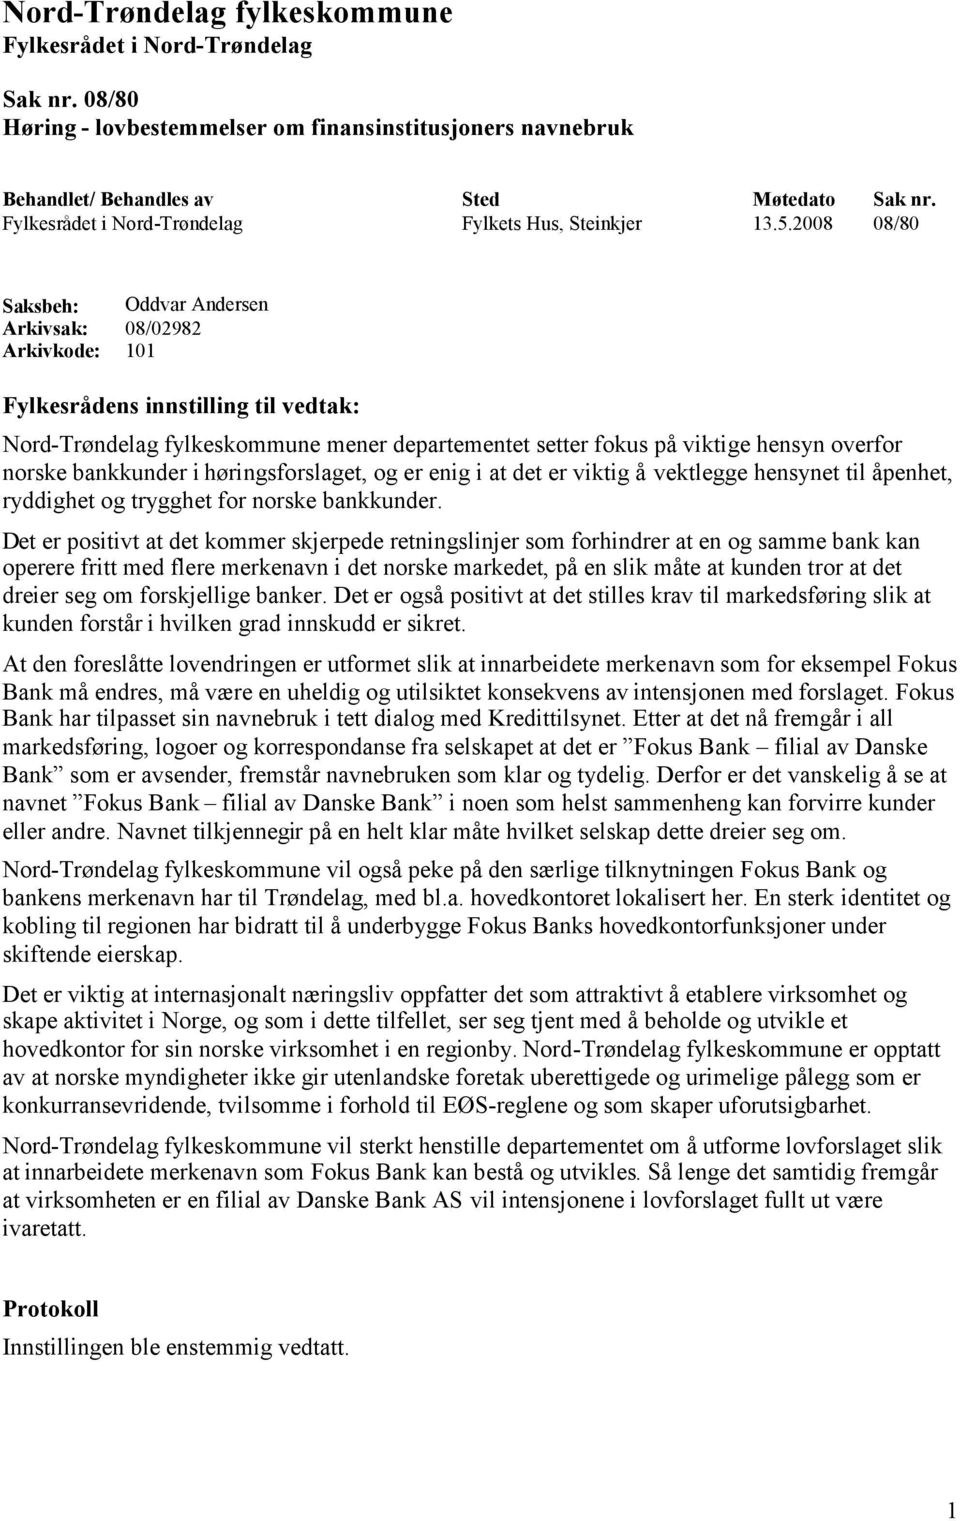 2008 08/80 Saksbeh: Oddvar Andersen Arkivsak: 08/02982 Arkivkode: 101 Fylkesrådens innstilling til vedtak: Nord-Trøndelag fylkeskommune mener departementet setter fokus på viktige hensyn overfor